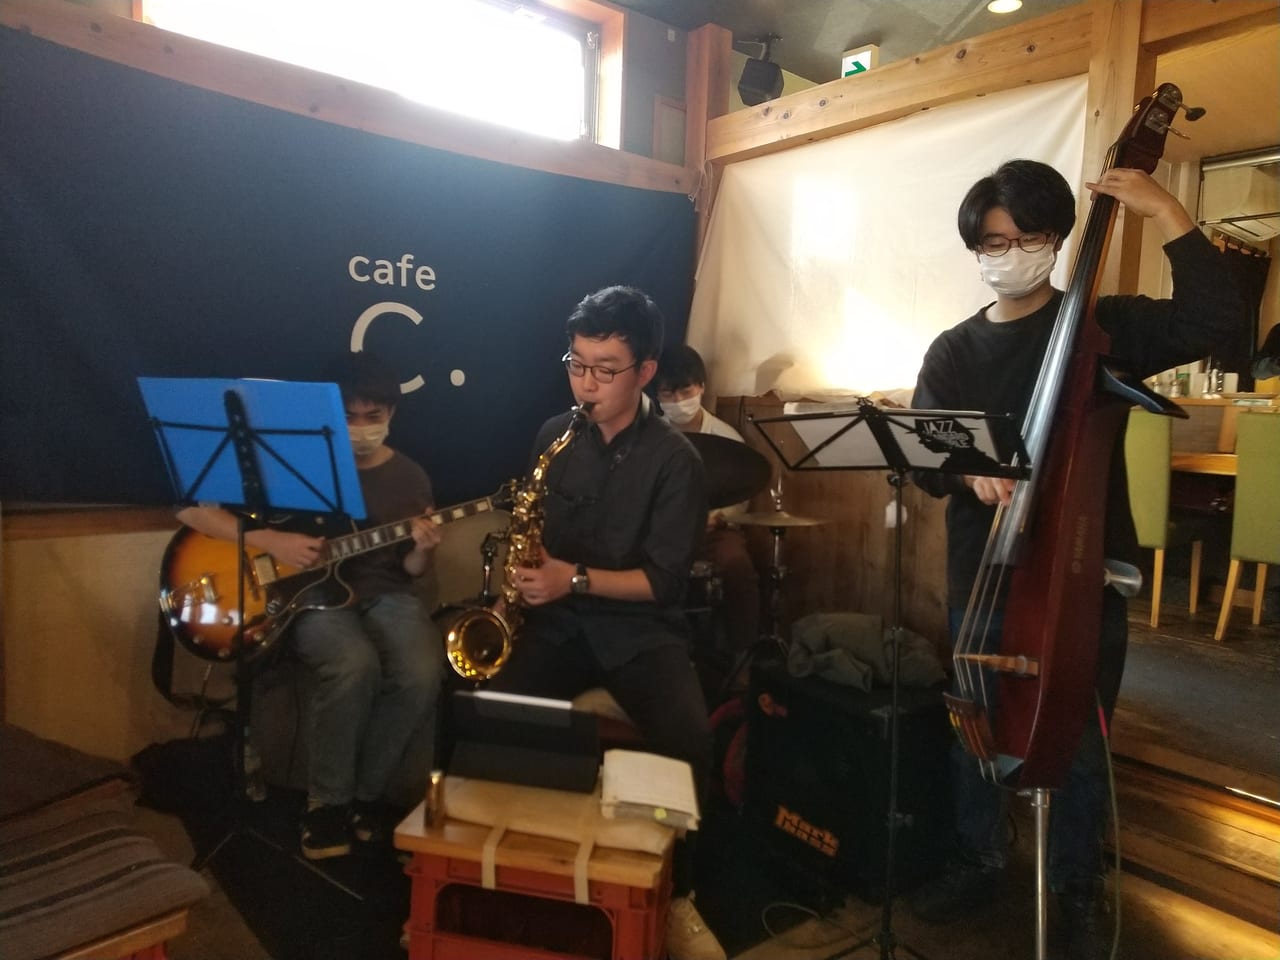 cafe C.(シードット) で広島大学JAZZ研究会のライブが開催。こだわりサンドとコーヒーのお店。